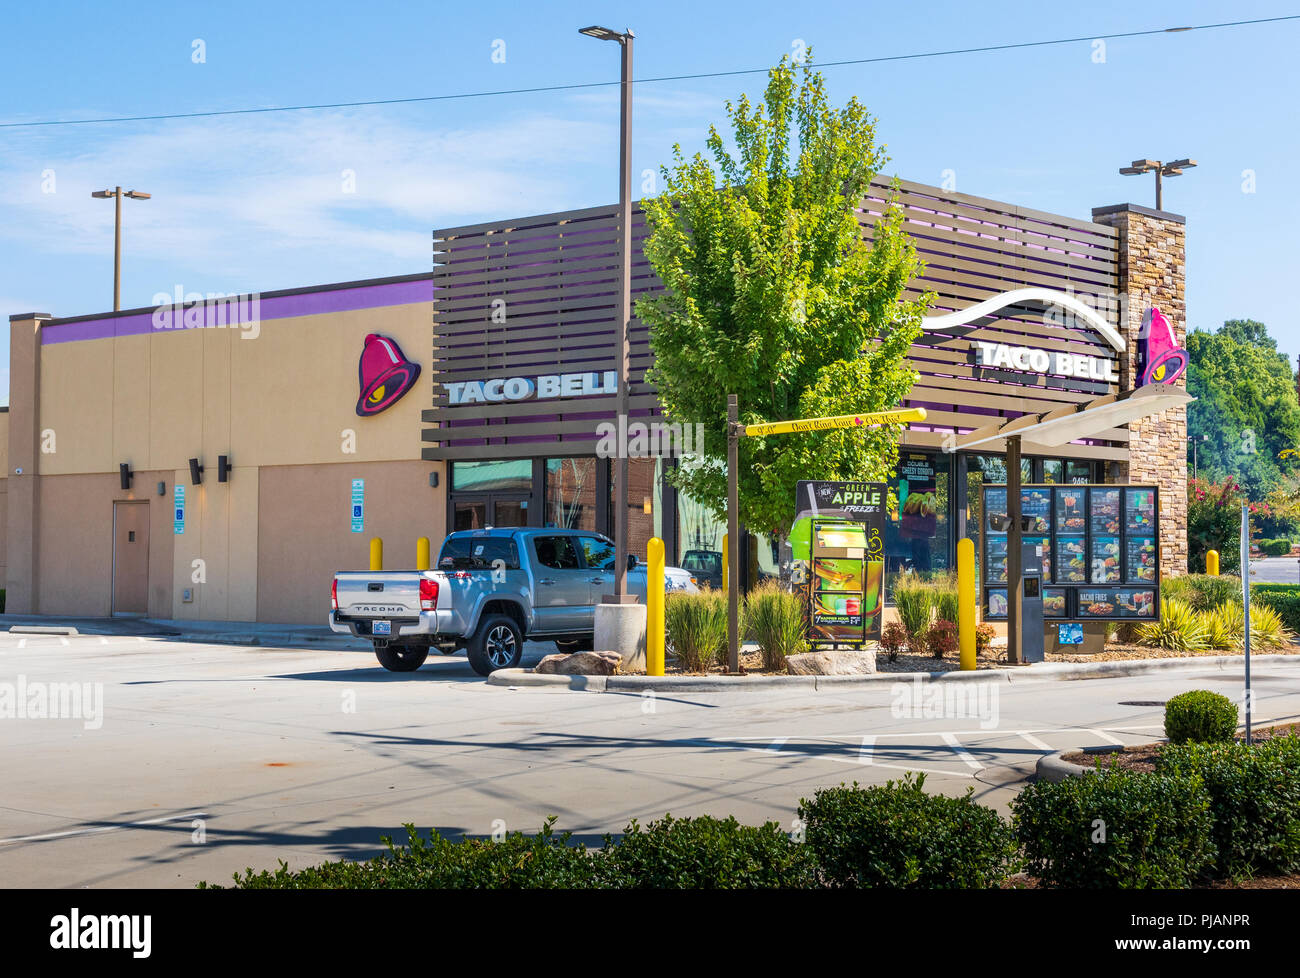 HICKORY, NC, USA-9/2/18 : un restaurant Taco Bell à Hickory, NC, montrant le drive-thru, et une camionnette stationnée dans le lot. Pas de gens qui sont visibles. Banque D'Images